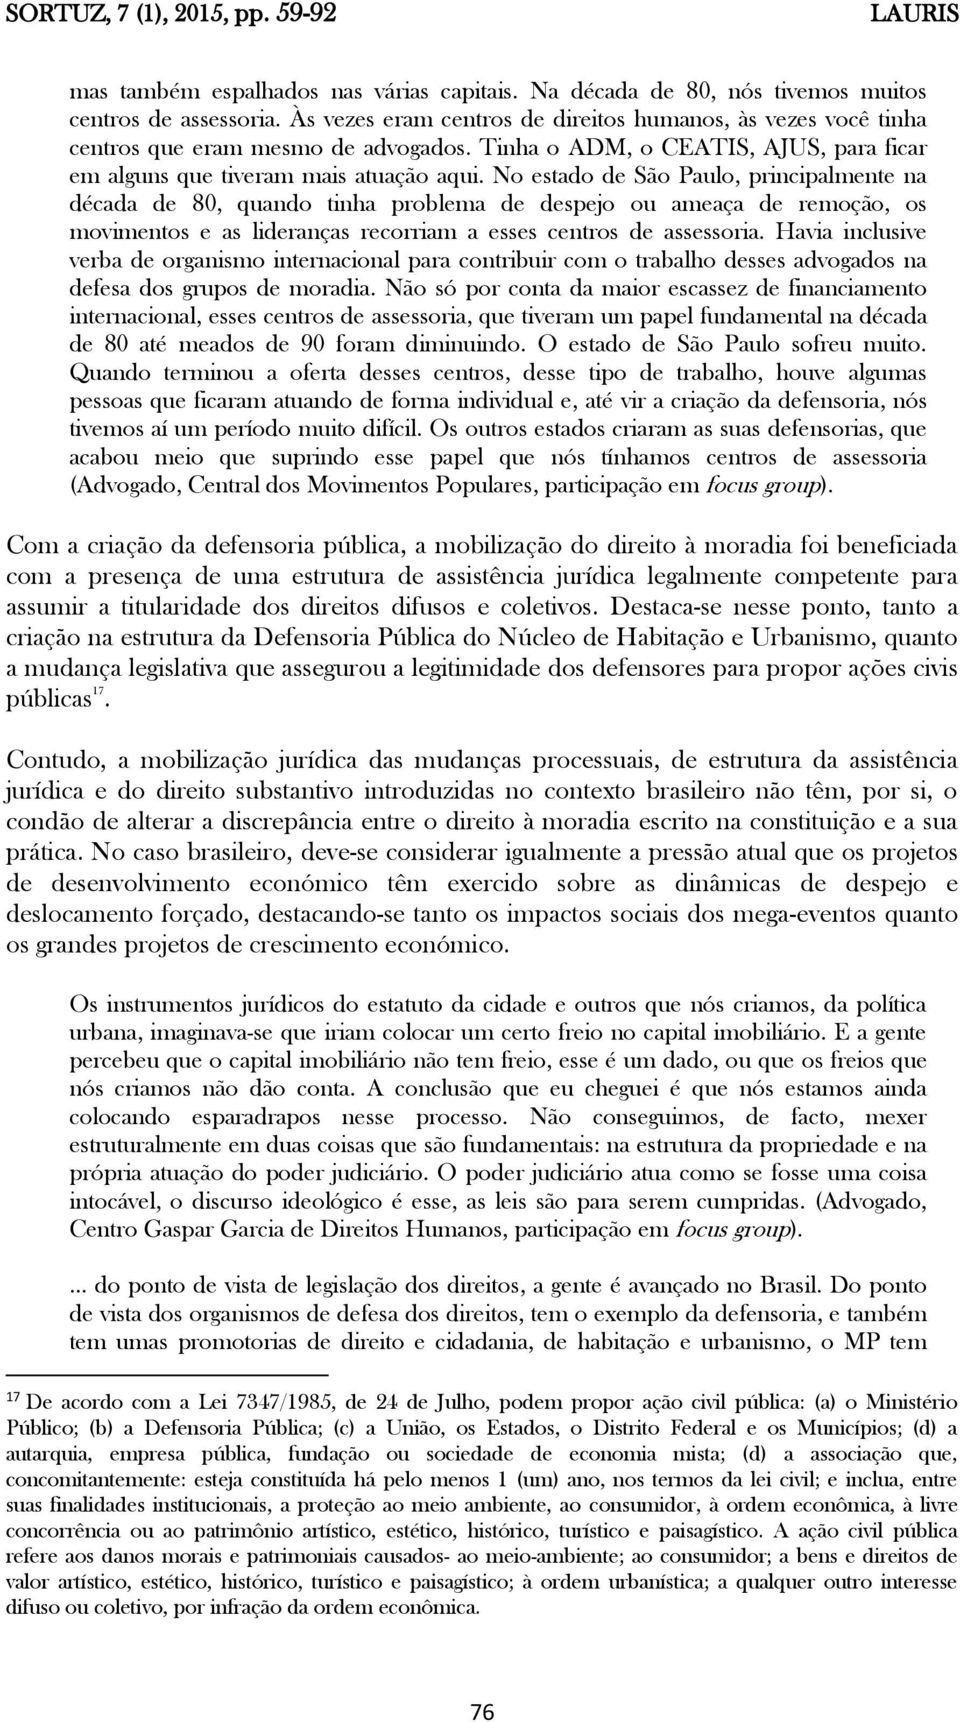 No estado de São Paulo, principalmente na década de 80, quando tinha problema de despejo ou ameaça de remoção, os movimentos e as lideranças recorriam a esses centros de assessoria.